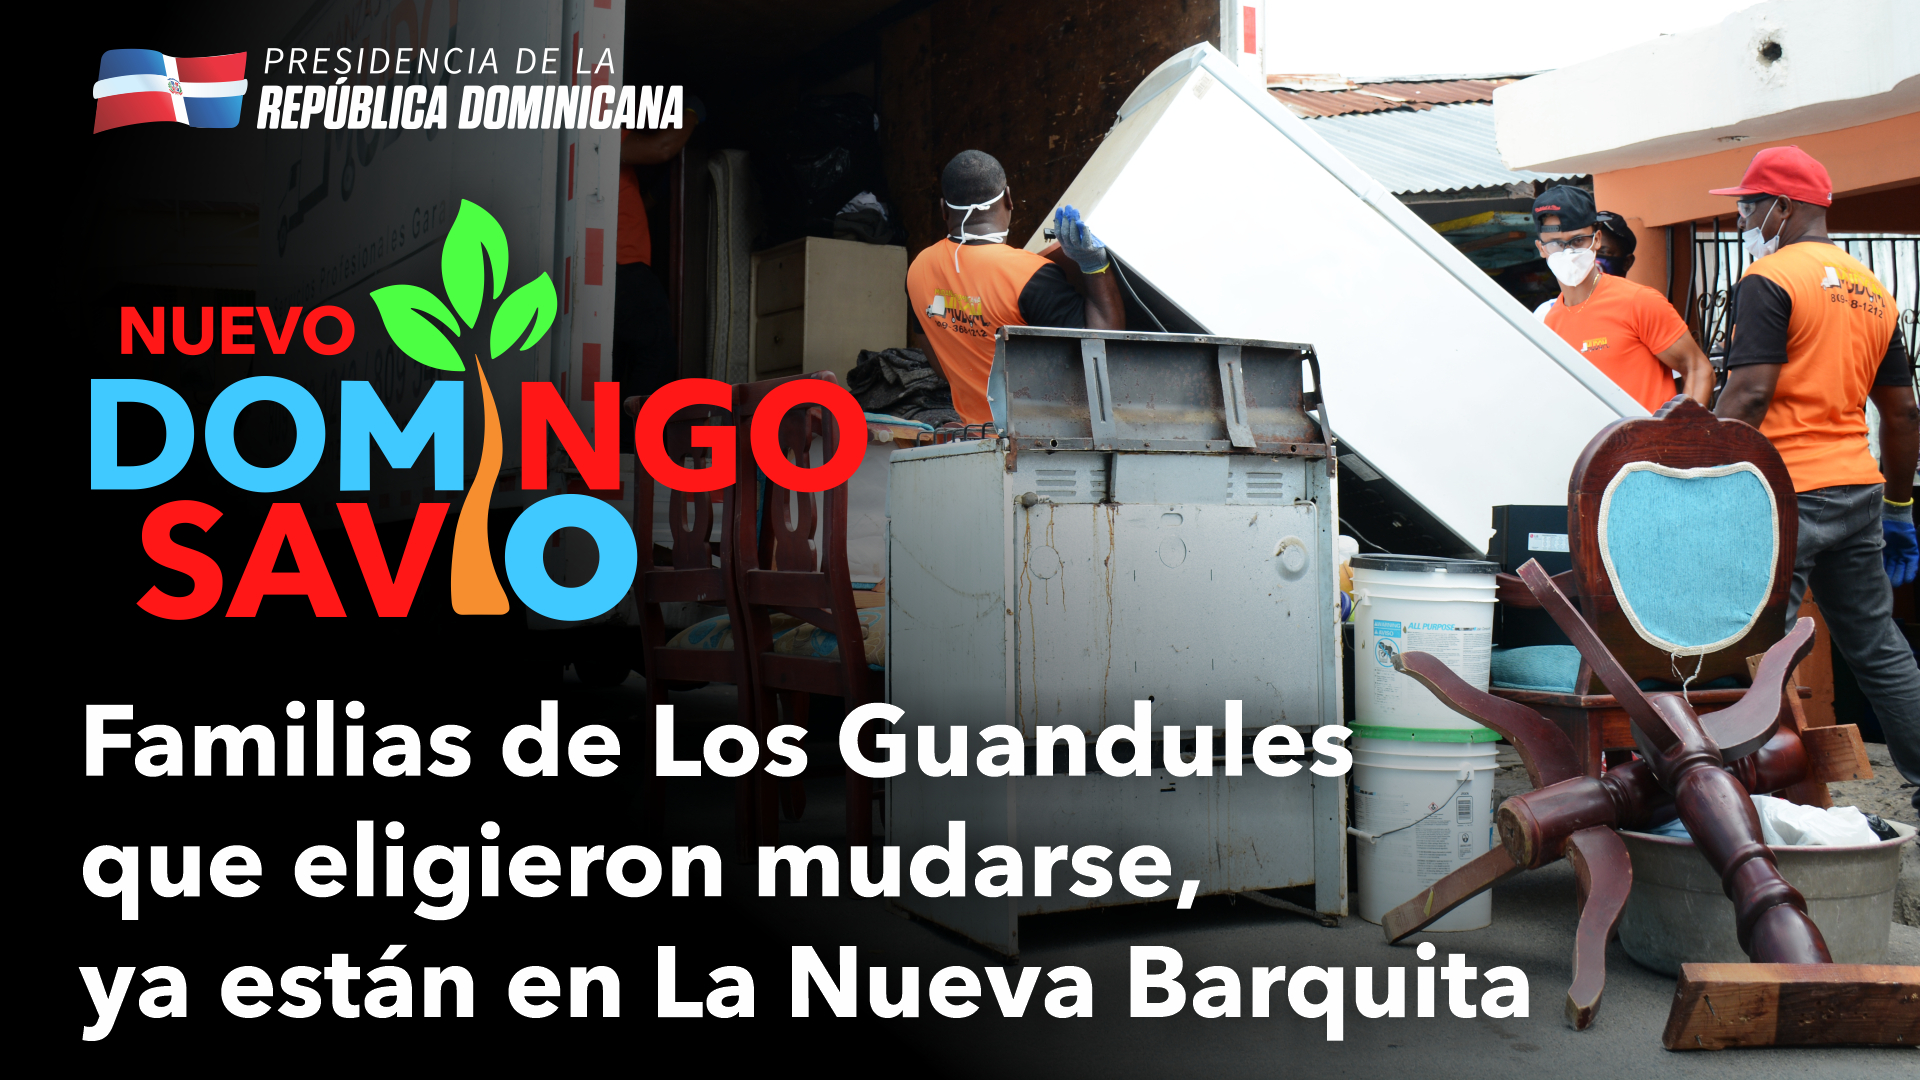 REPÚBLICA DOMINICANA: Primer grupo de familias de La Ciénaga y Los Guandules que eligieron mudarse a La Nueva Barquita ya están en sus apartamentos